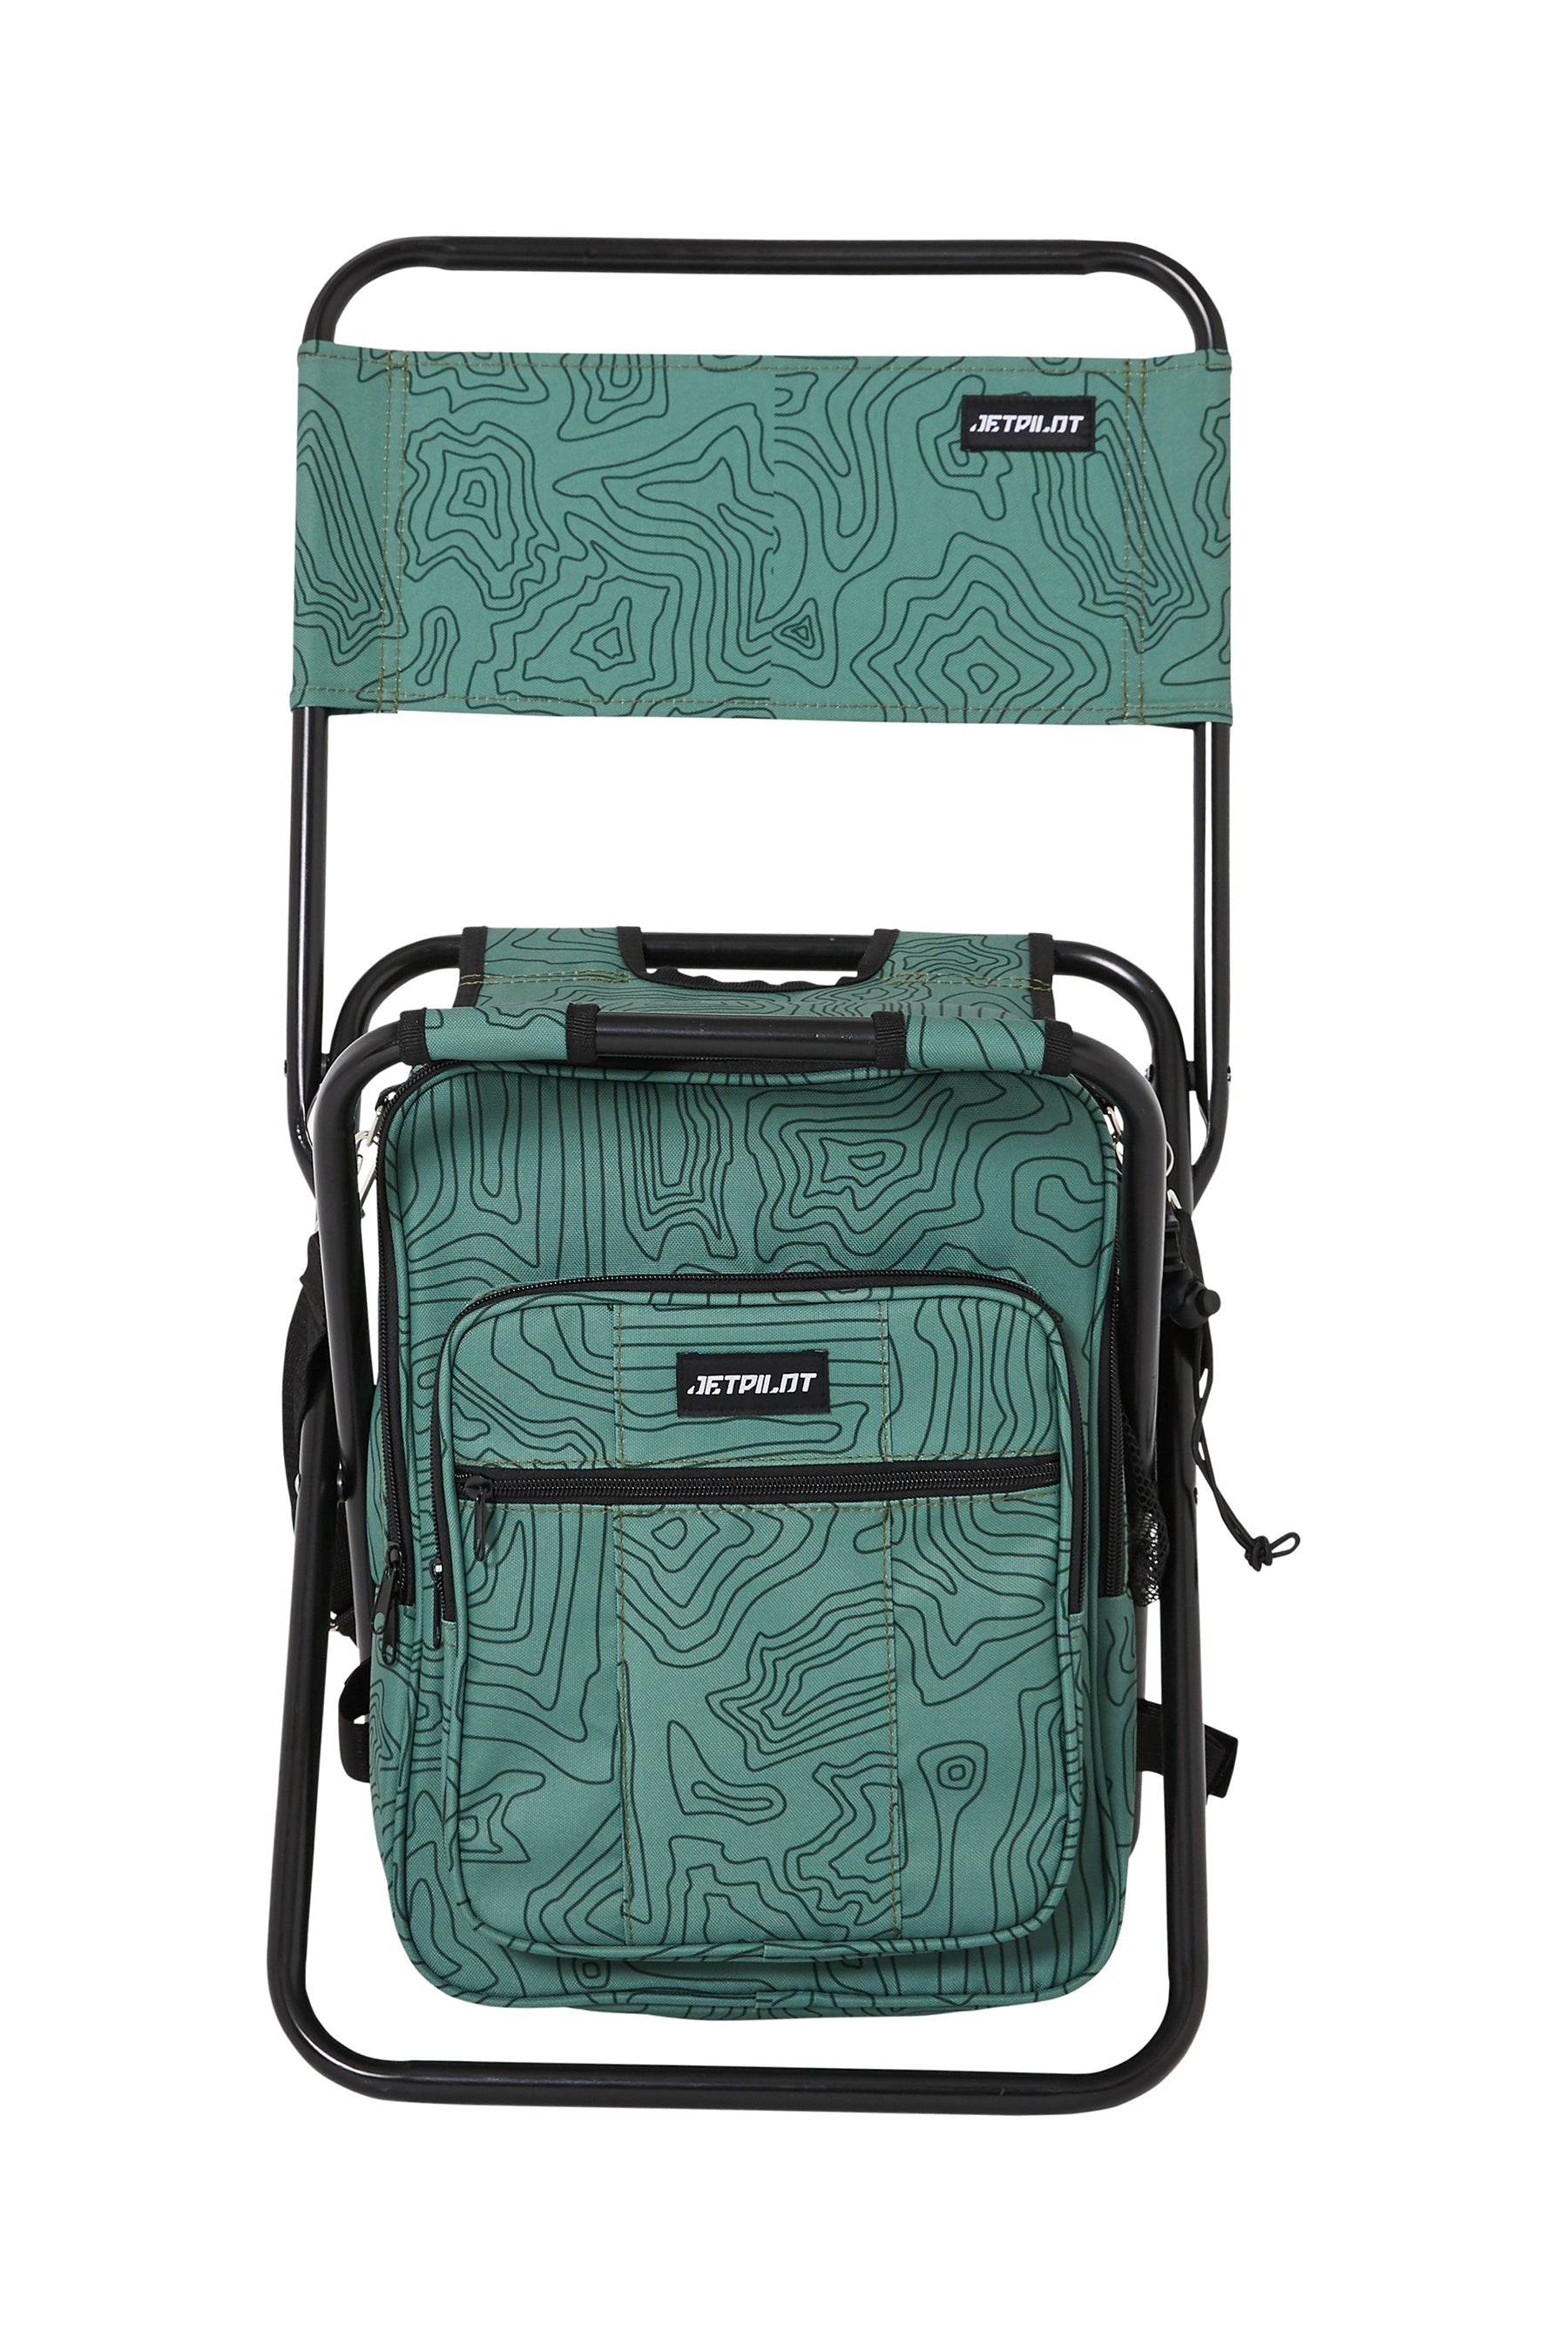 Jetpilot Back Rest Chilled Seat Bag - Sage Lifestyle 8